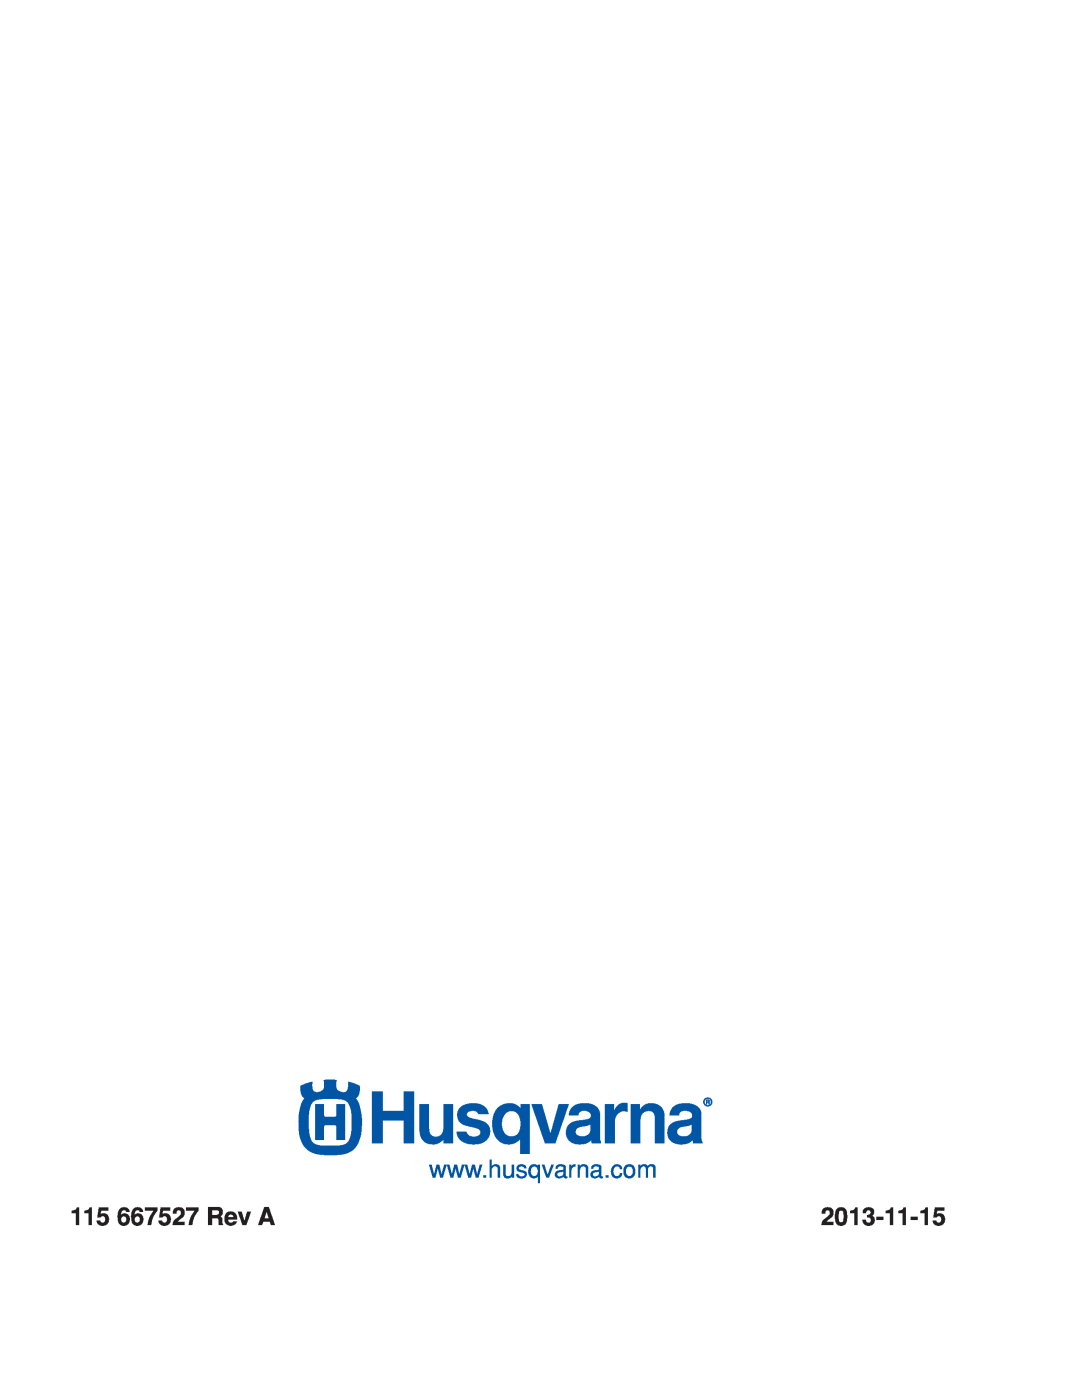 Husqvarna RZ46215 warranty 115 667527 Rev A, 2013-11-15 